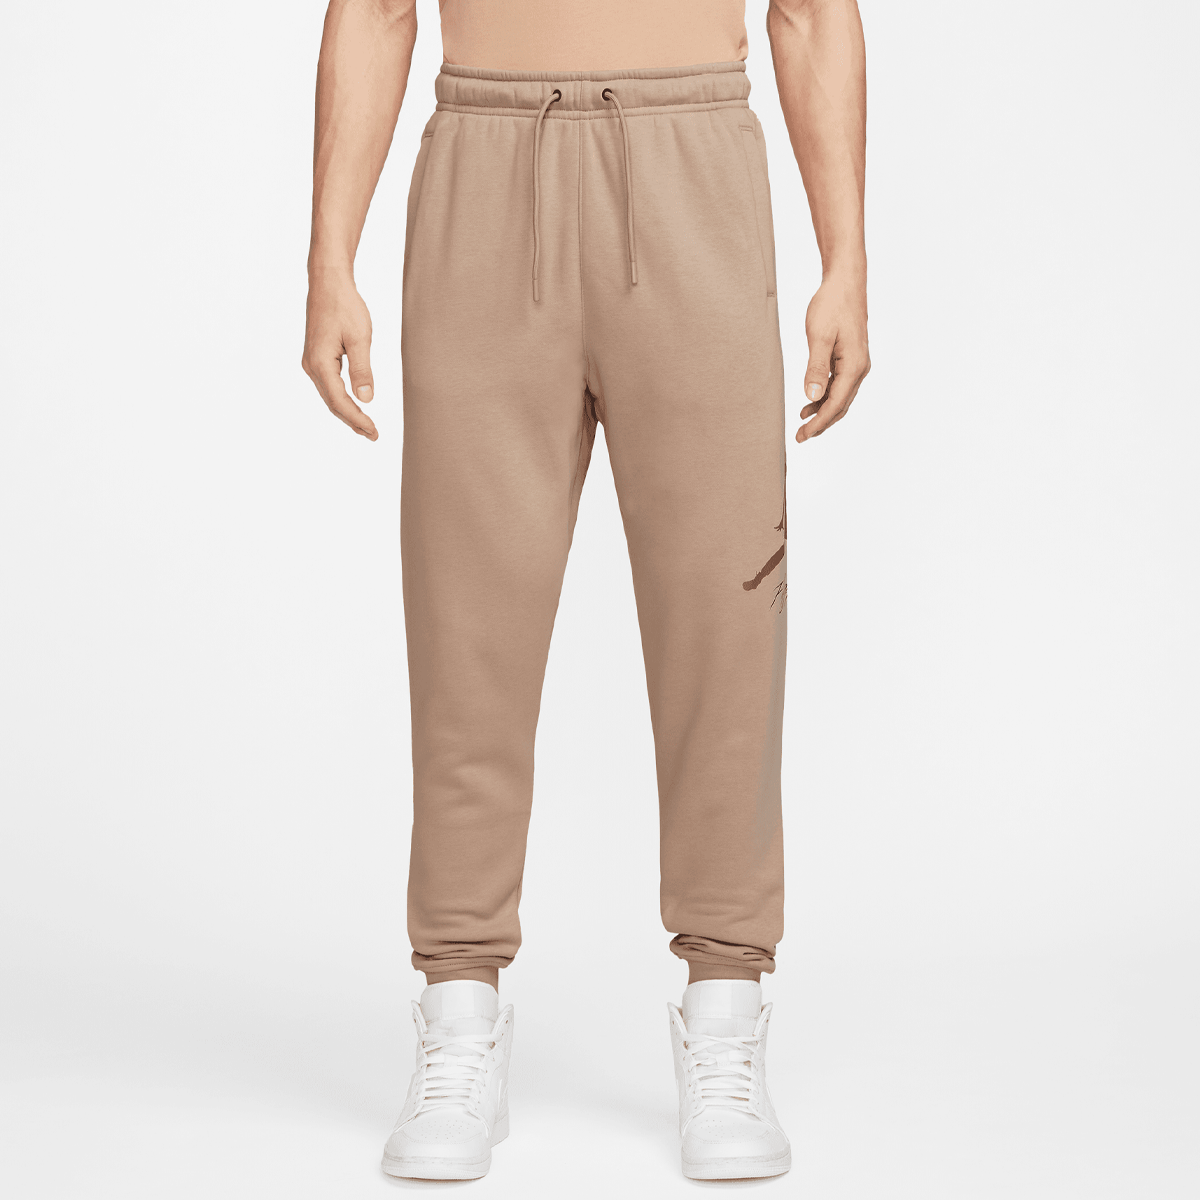 Jordan Essentials Fleece Baseline Pants Trainingsbroeken Heren hemp lt british tan maat: M beschikbare maaten:S M L XL